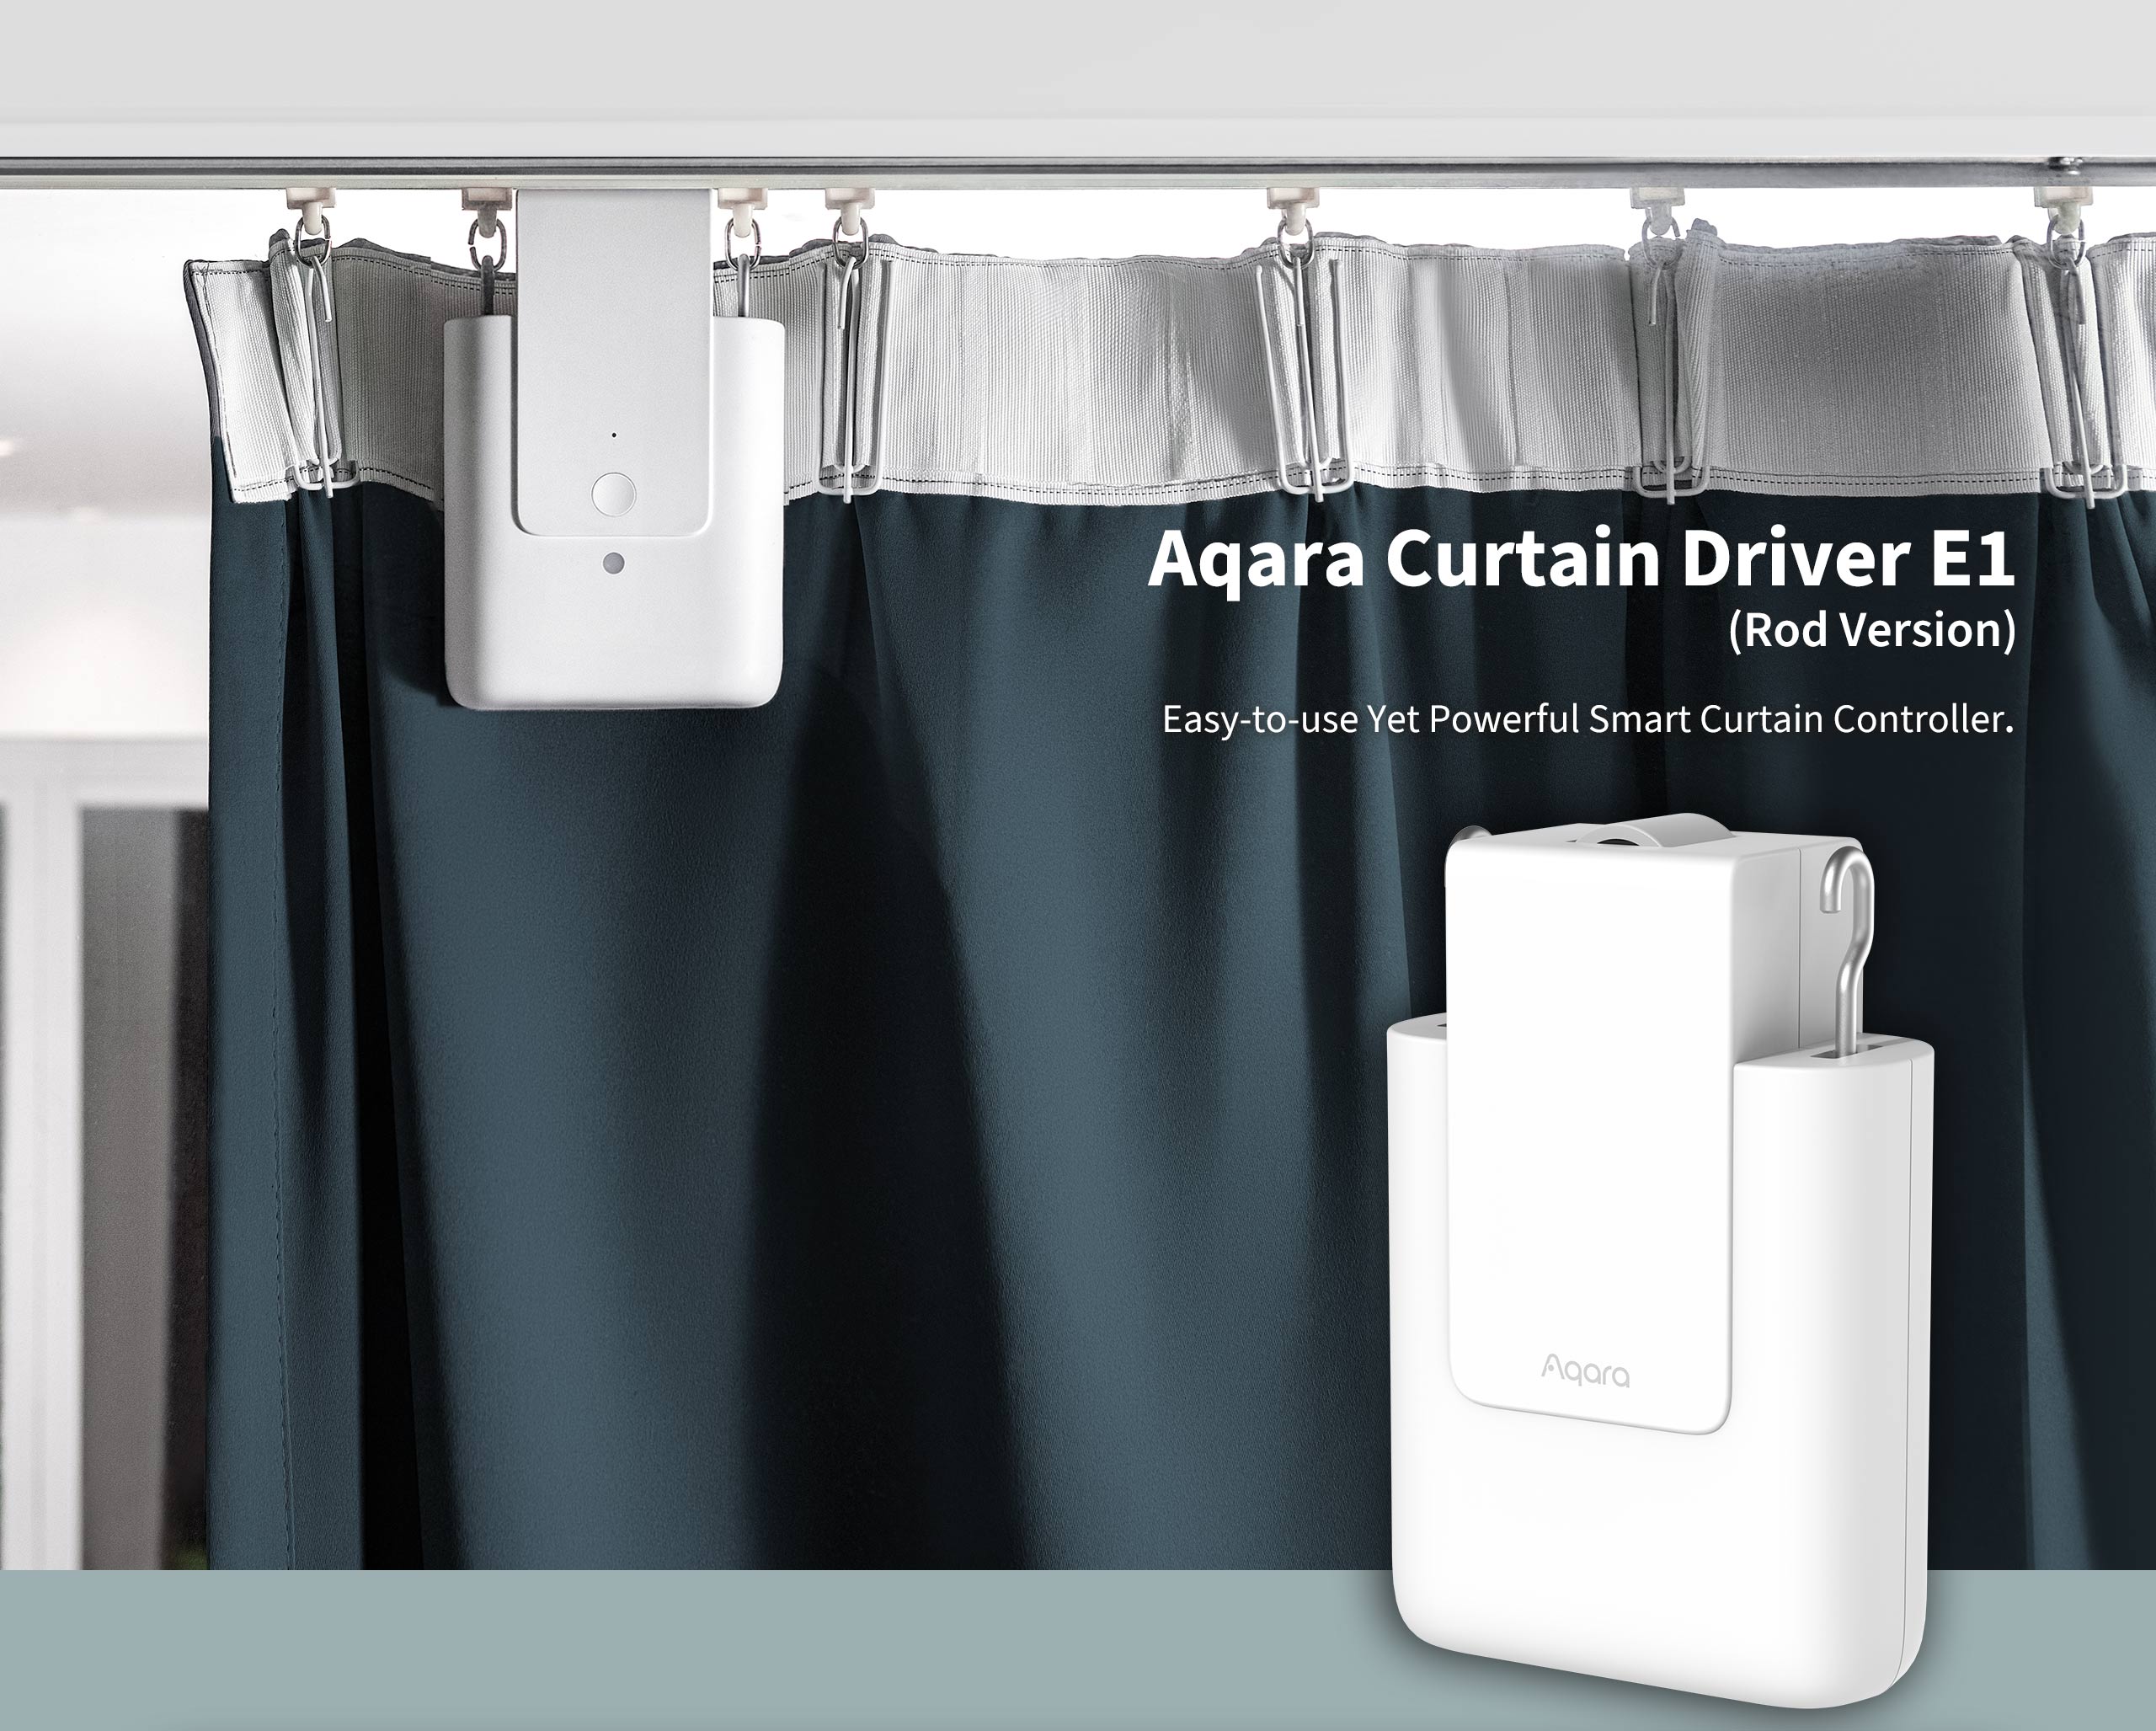 Aqara Curtain Driver E1